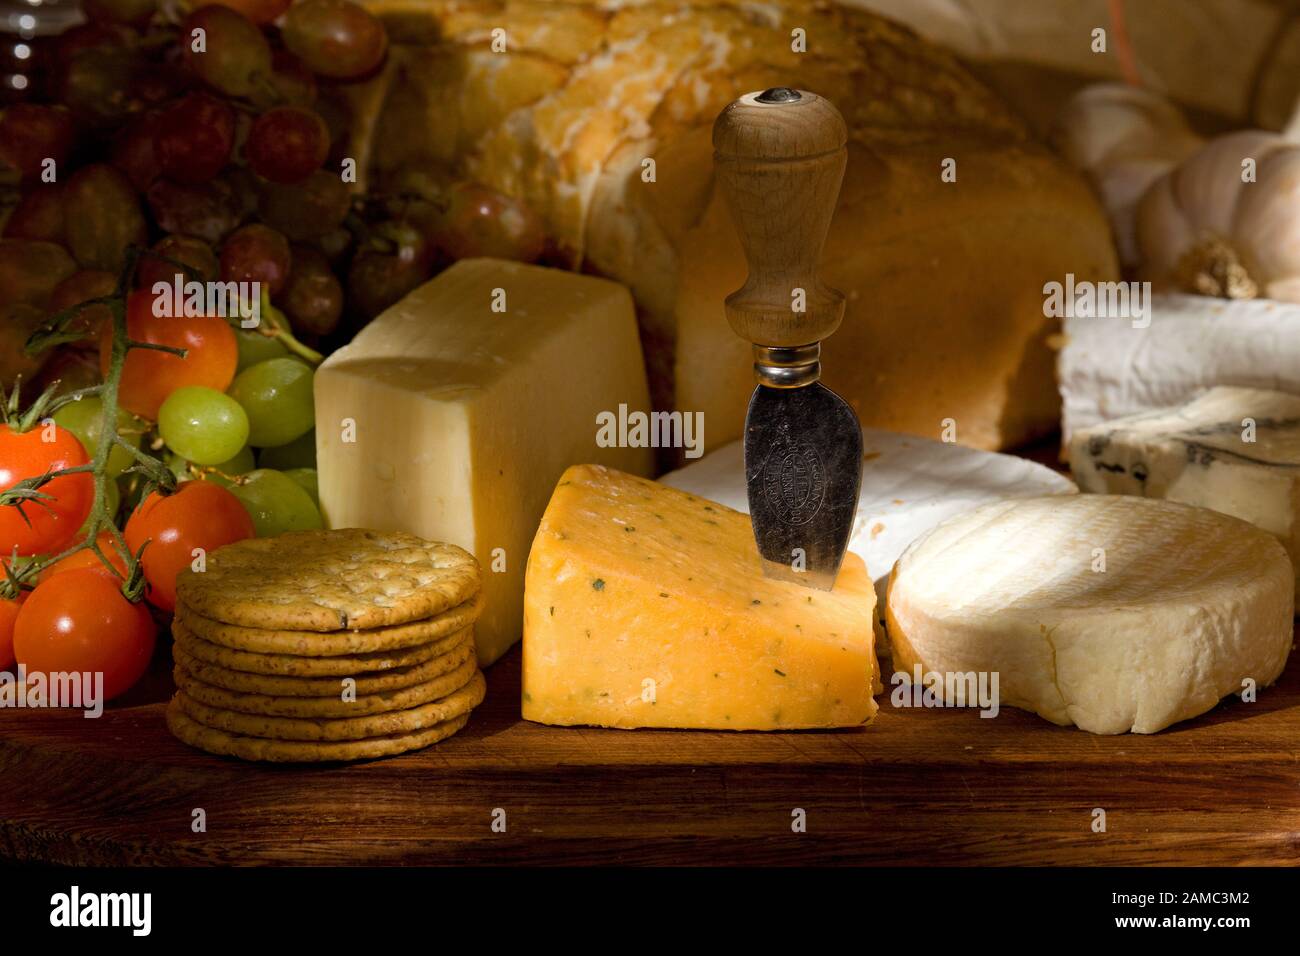 Plateau à fromage avec assortiment de fromages fruits et légumes Banque D'Images